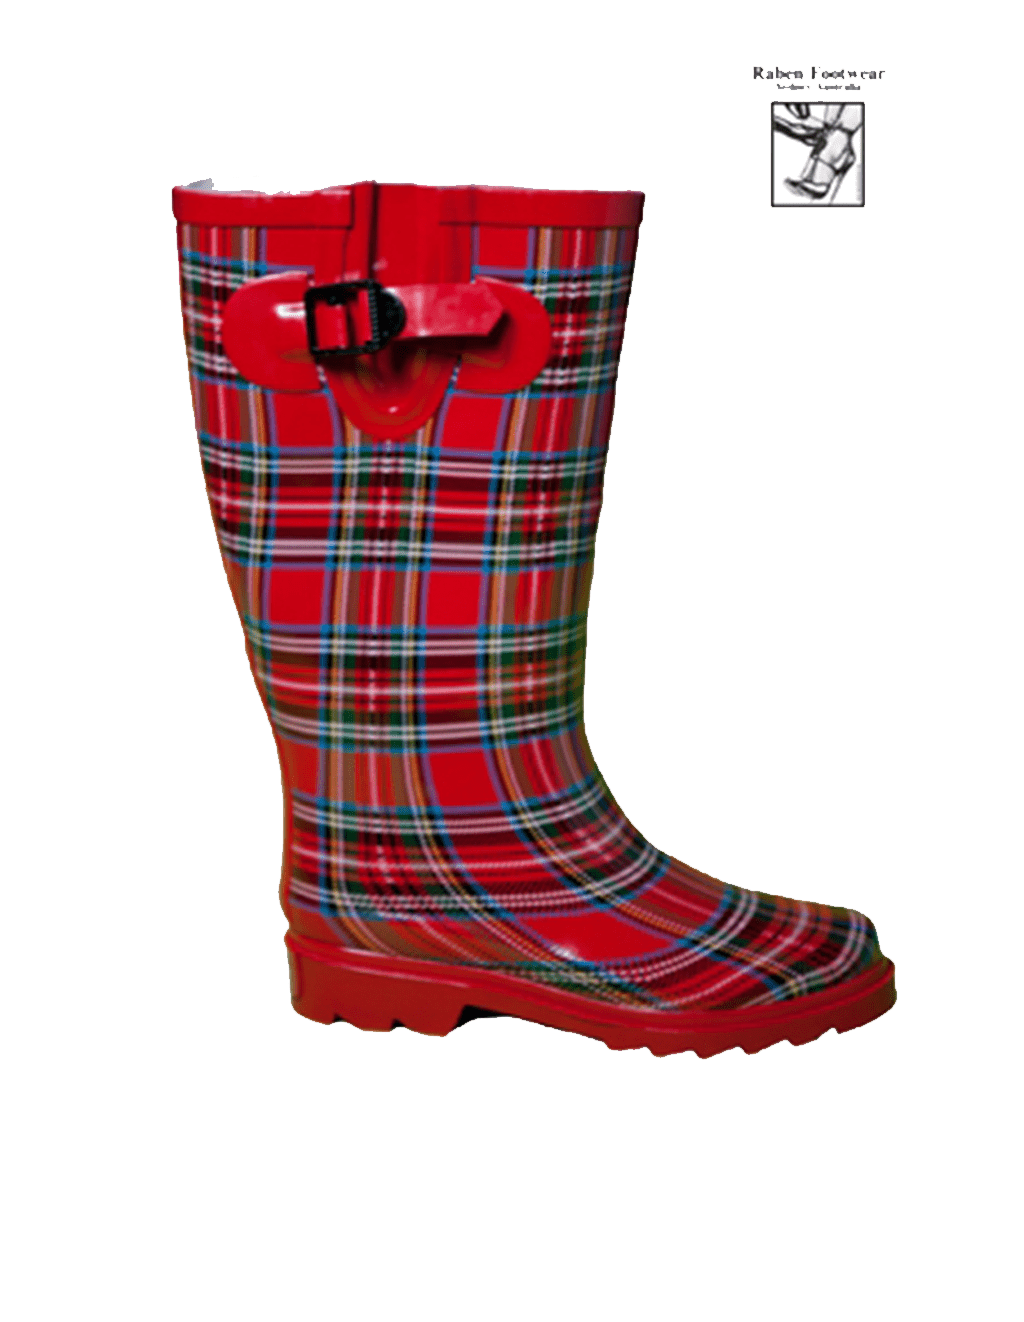 RABEN Gumboots/Wellies/Rainboots RED TARTAN - Raben Footwear